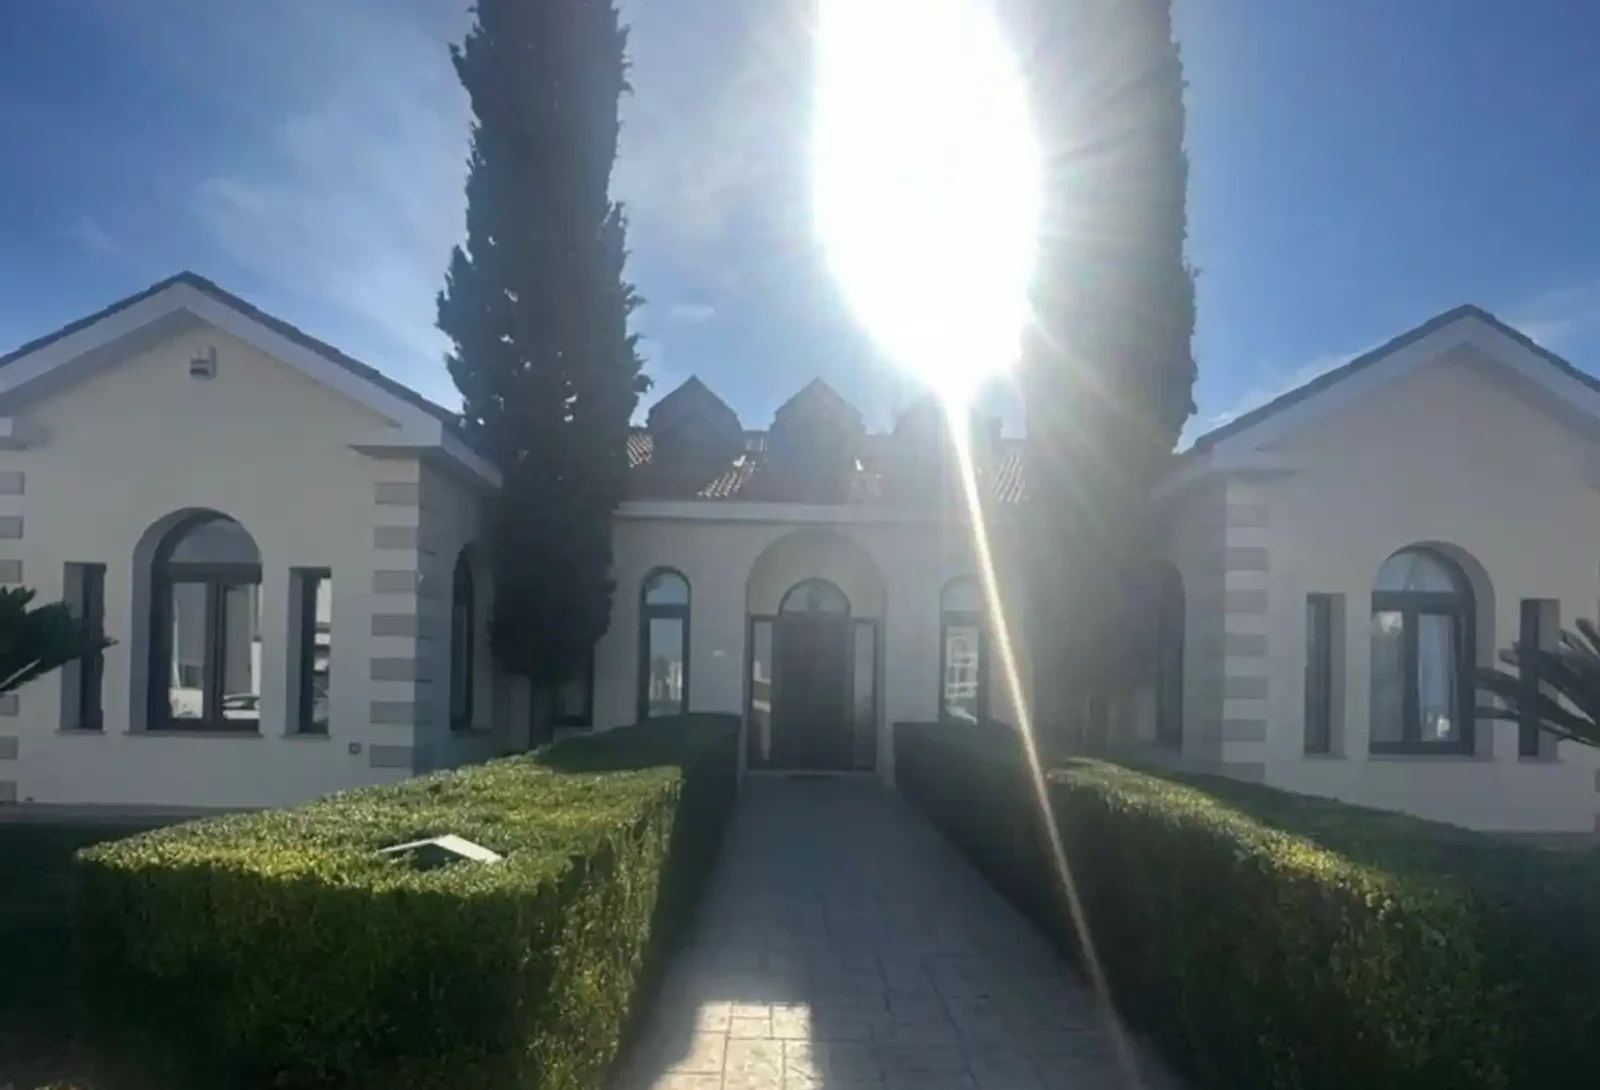 3-bedroom villa to rent €4.000, image 1